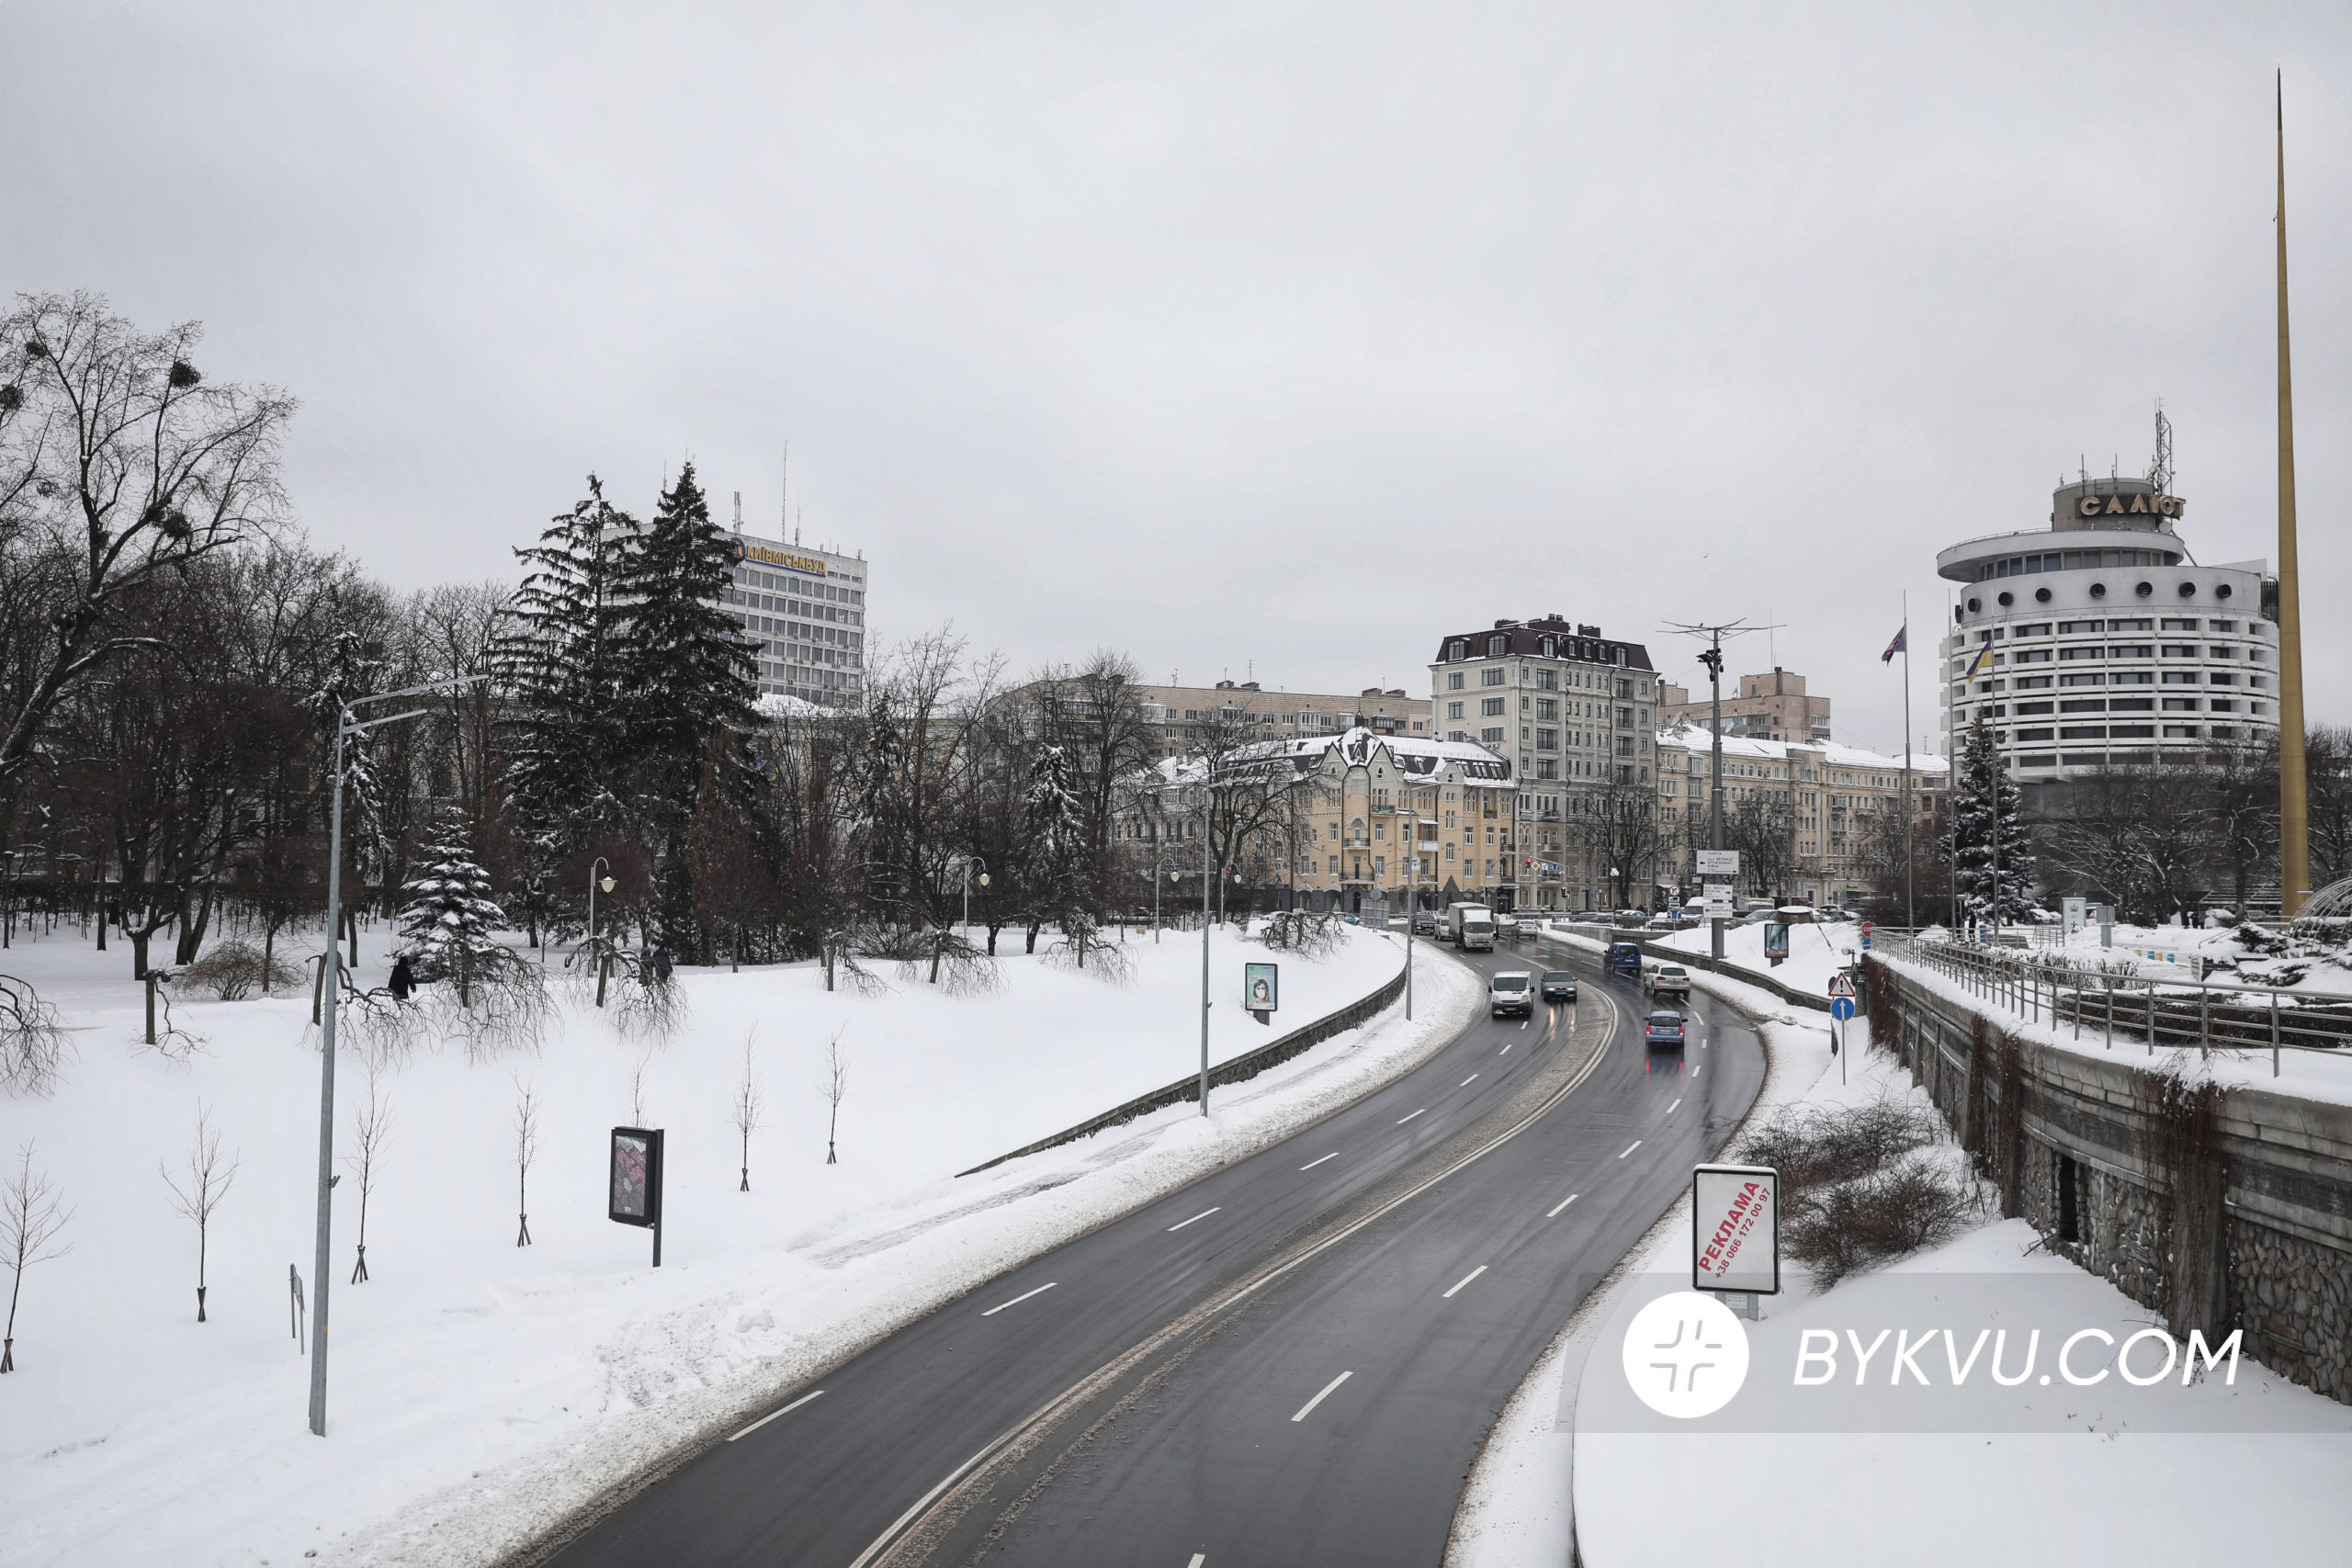 Сніг у Києві